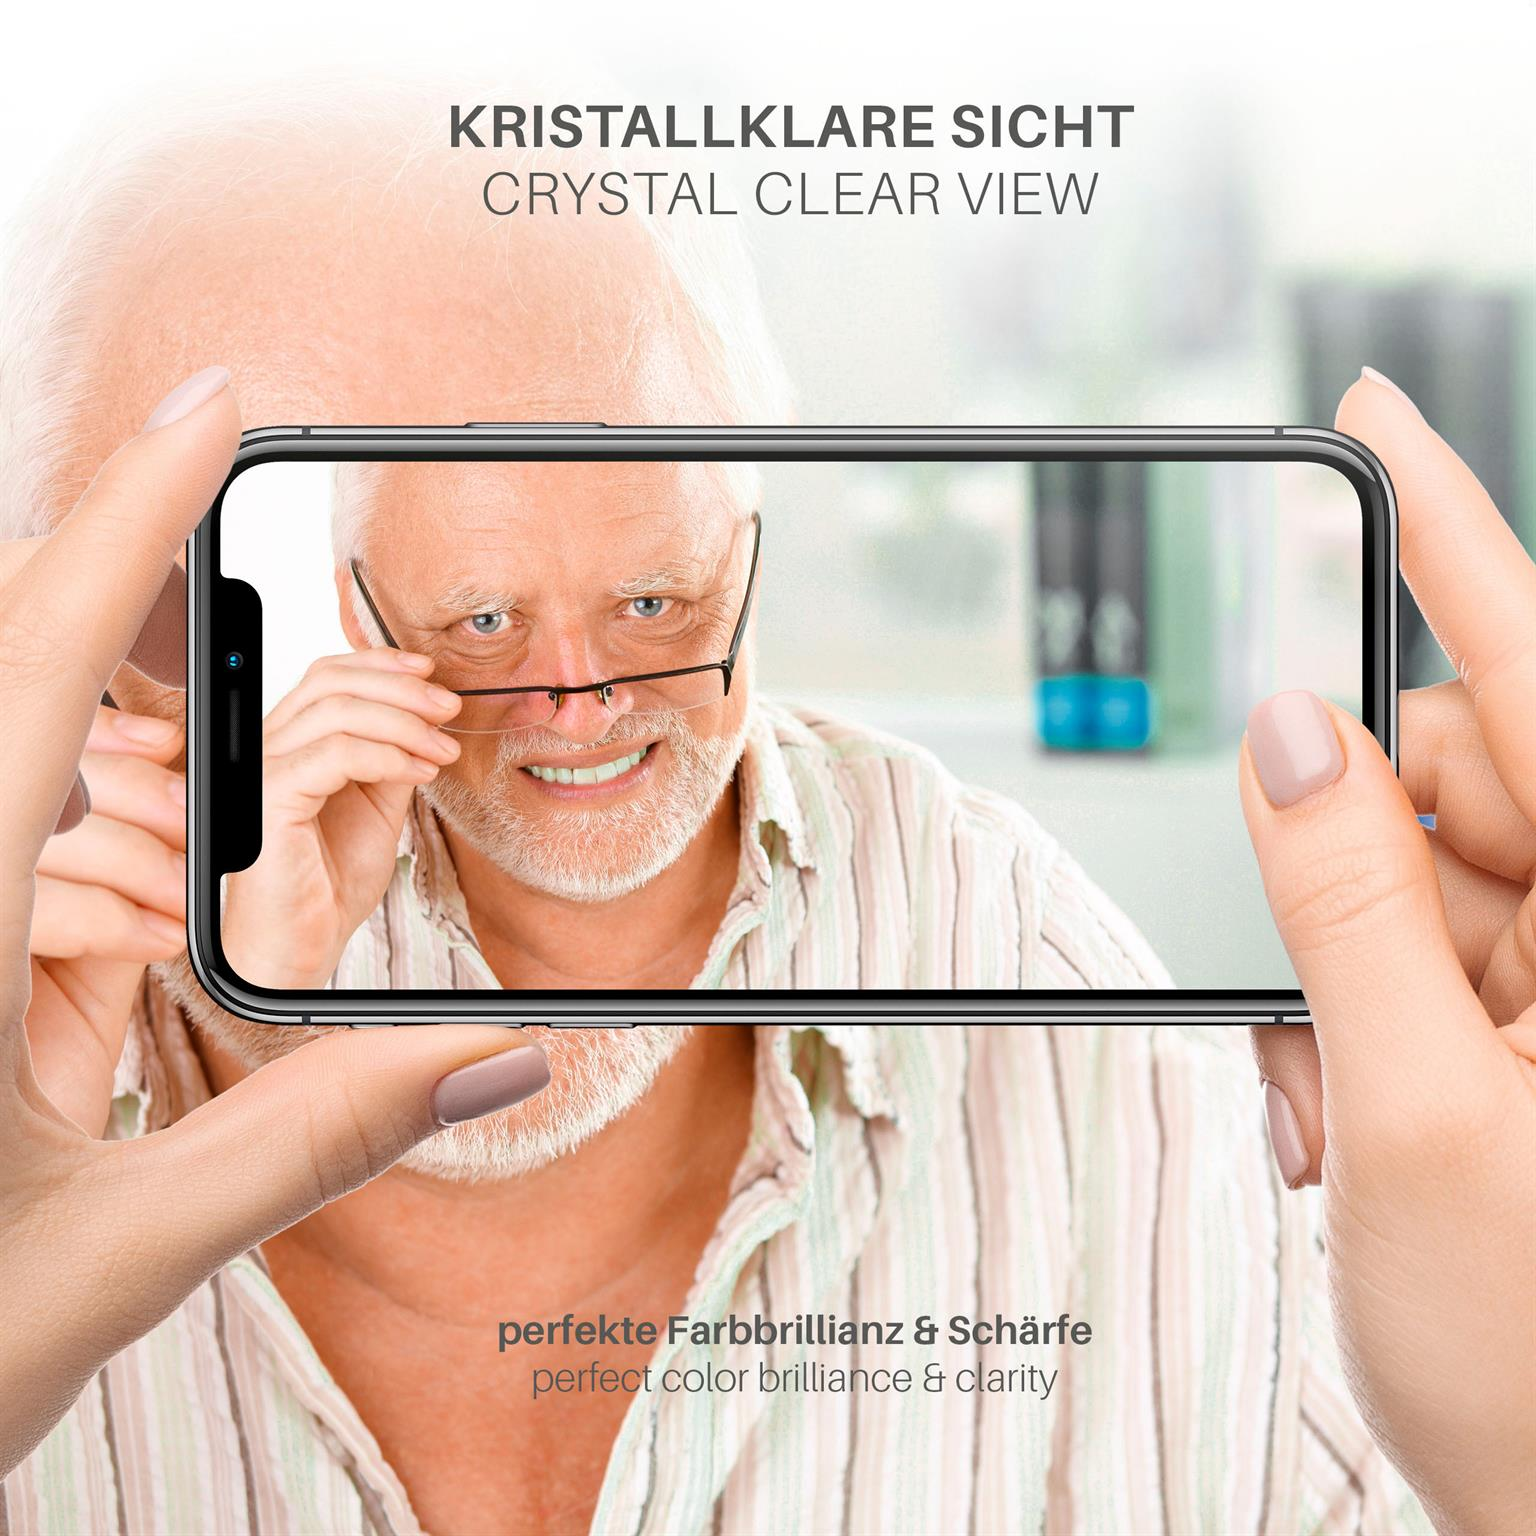 LG Displayschutz(für MOEX Schutzfolie, 3x (2017)) klar K4